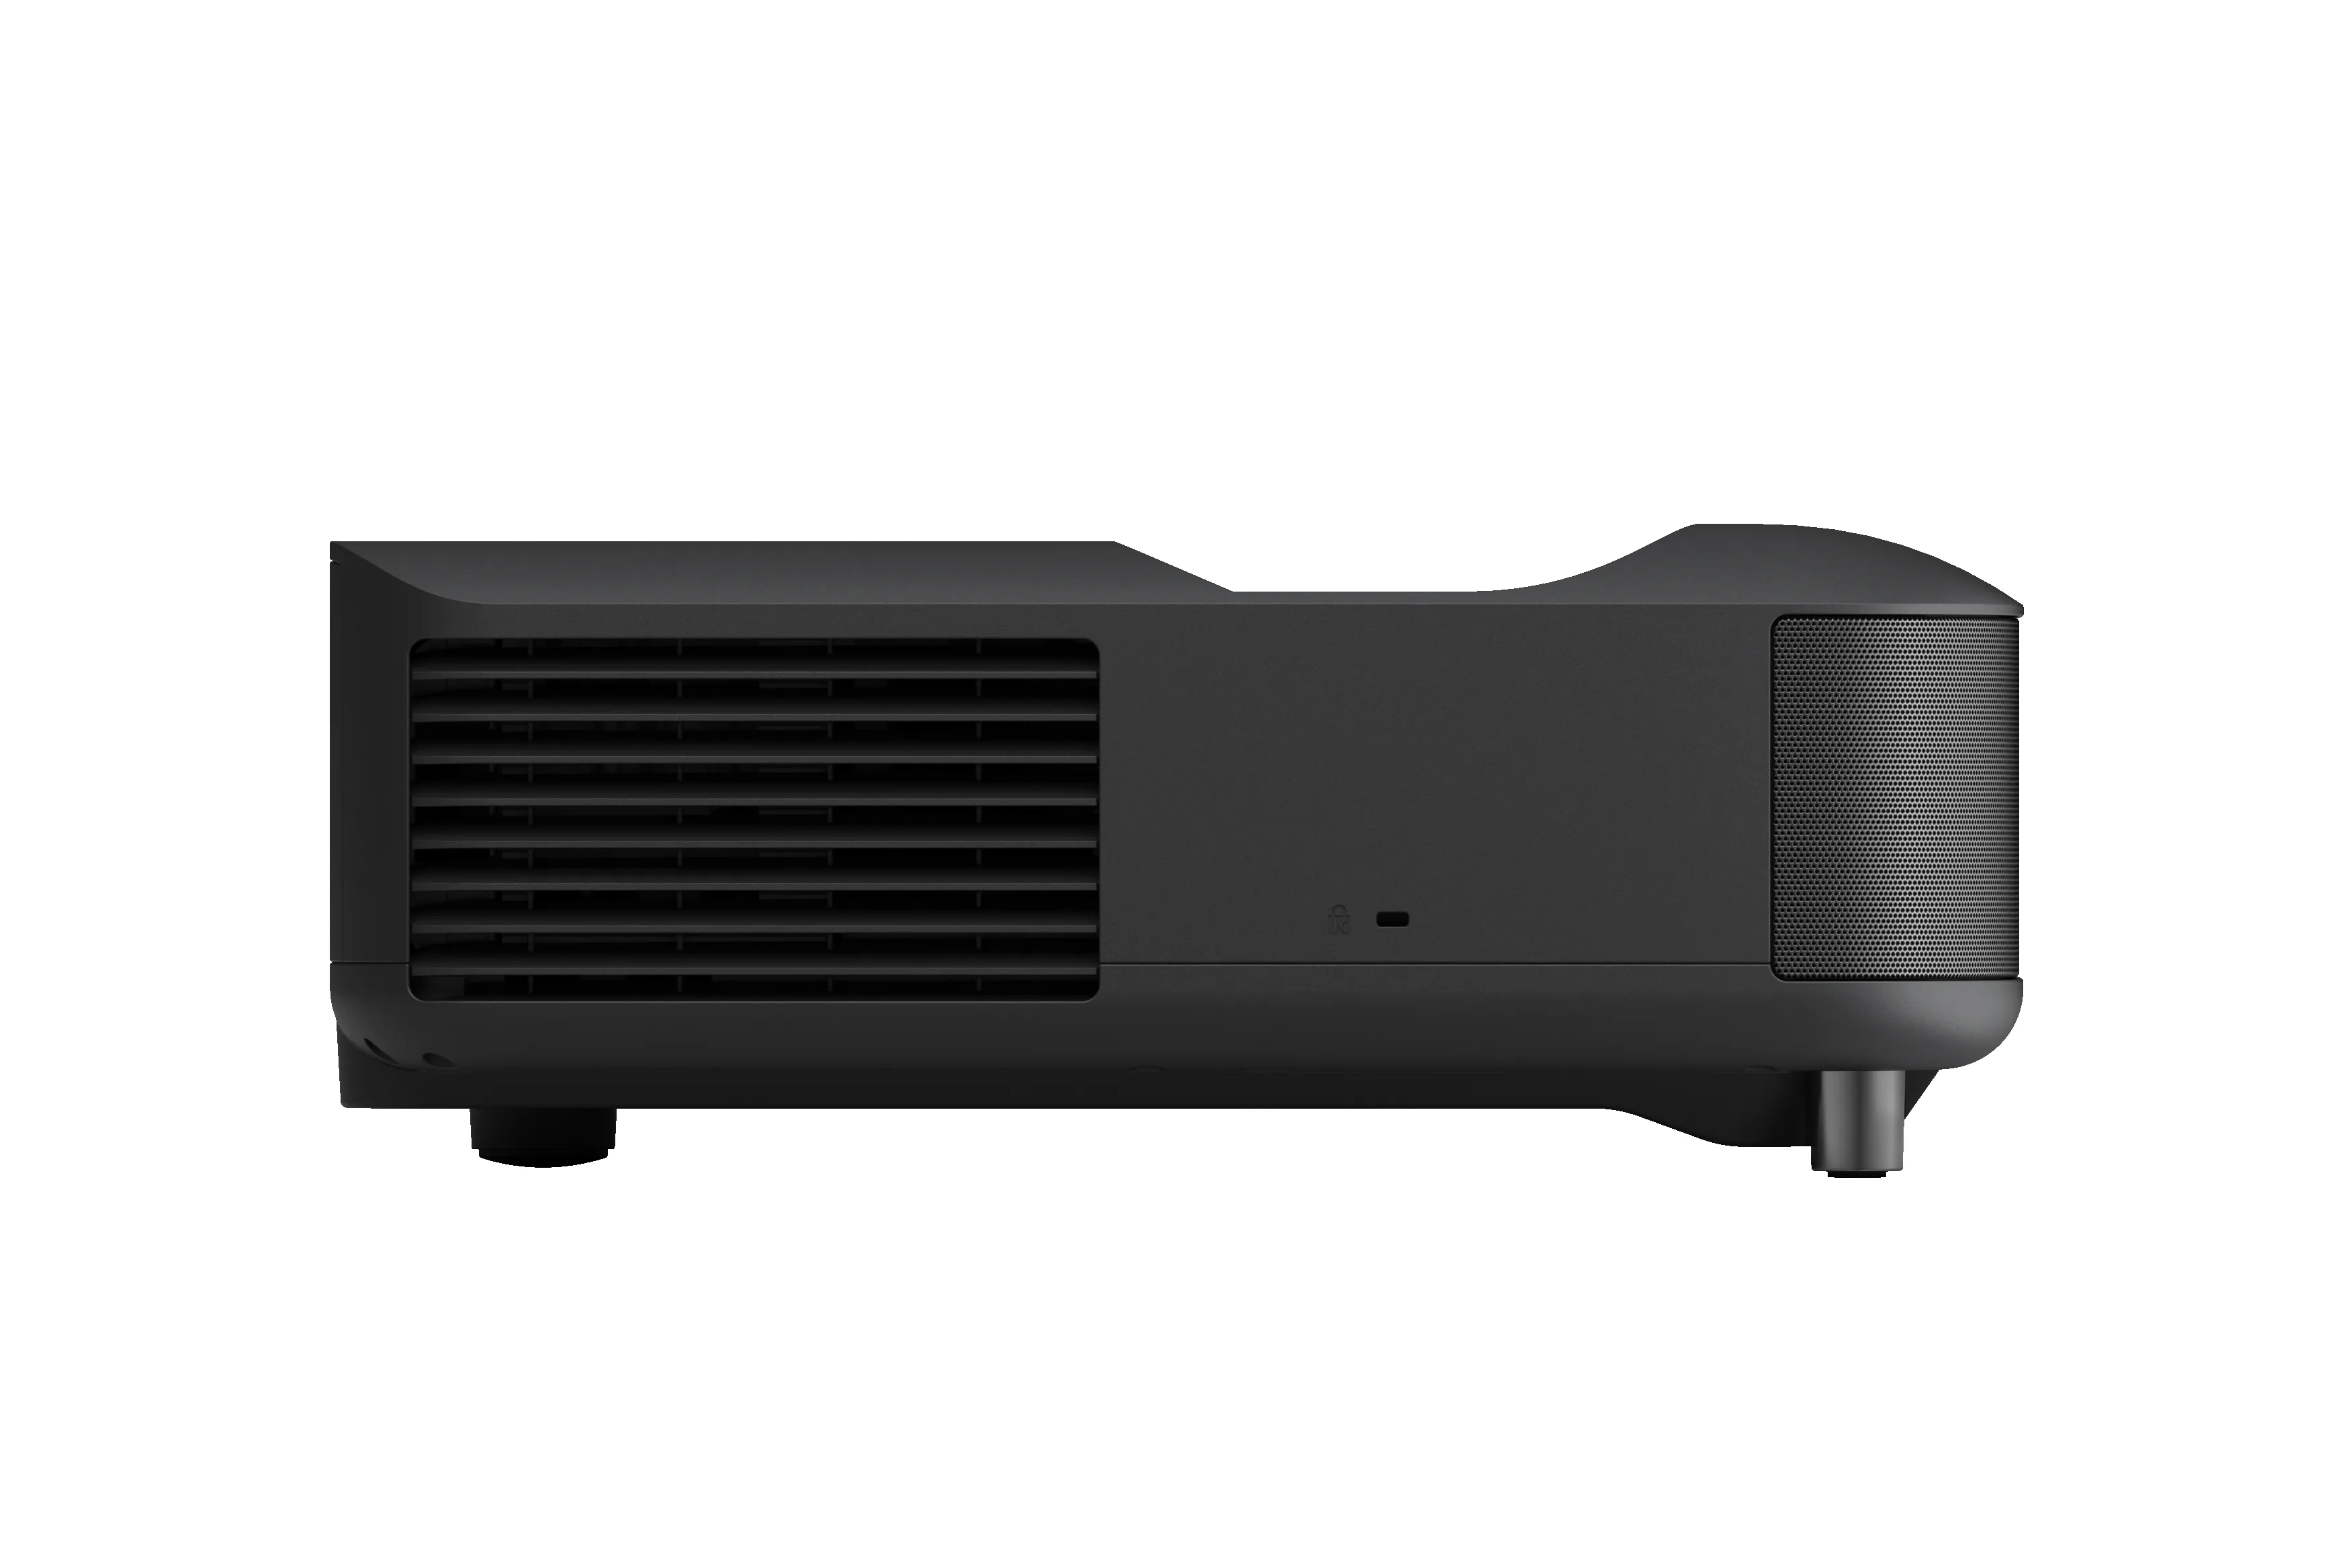 Vente EPSON EH-LS650B Laser Projector Epson au meilleur prix - visuel 4